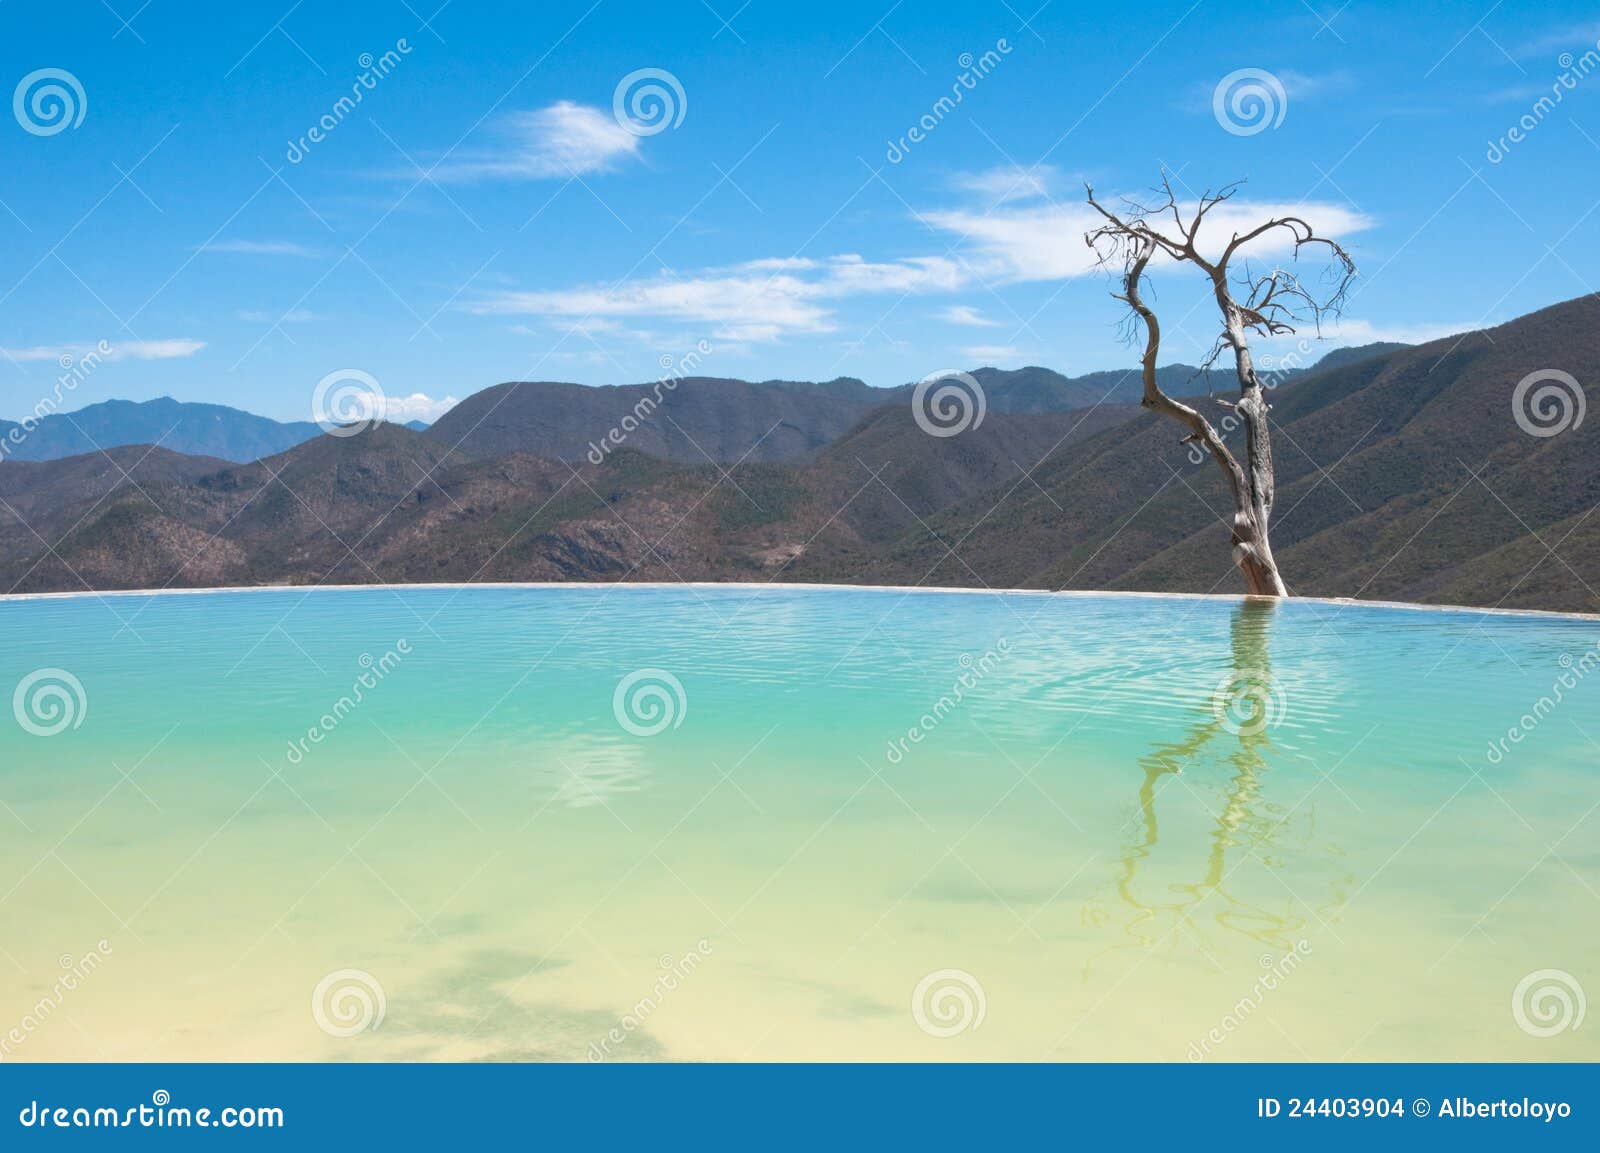 hierve el agua, thermal spring, oaxaca (mexico)